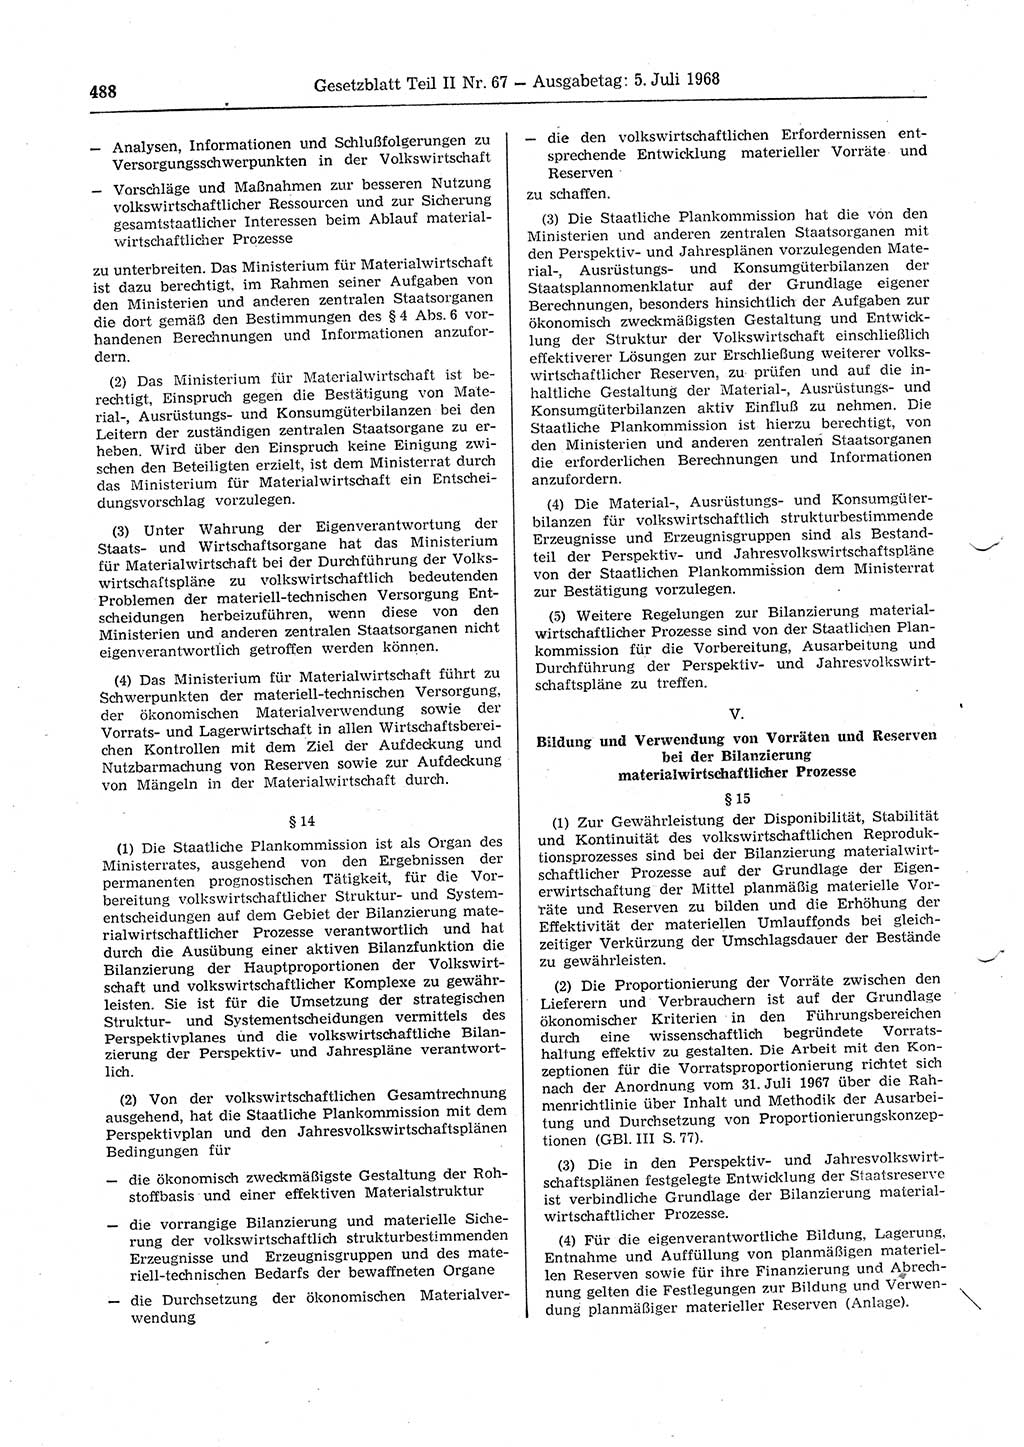 Gesetzblatt (GBl.) der Deutschen Demokratischen Republik (DDR) Teil ⅠⅠ 1968, Seite 488 (GBl. DDR ⅠⅠ 1968, S. 488)